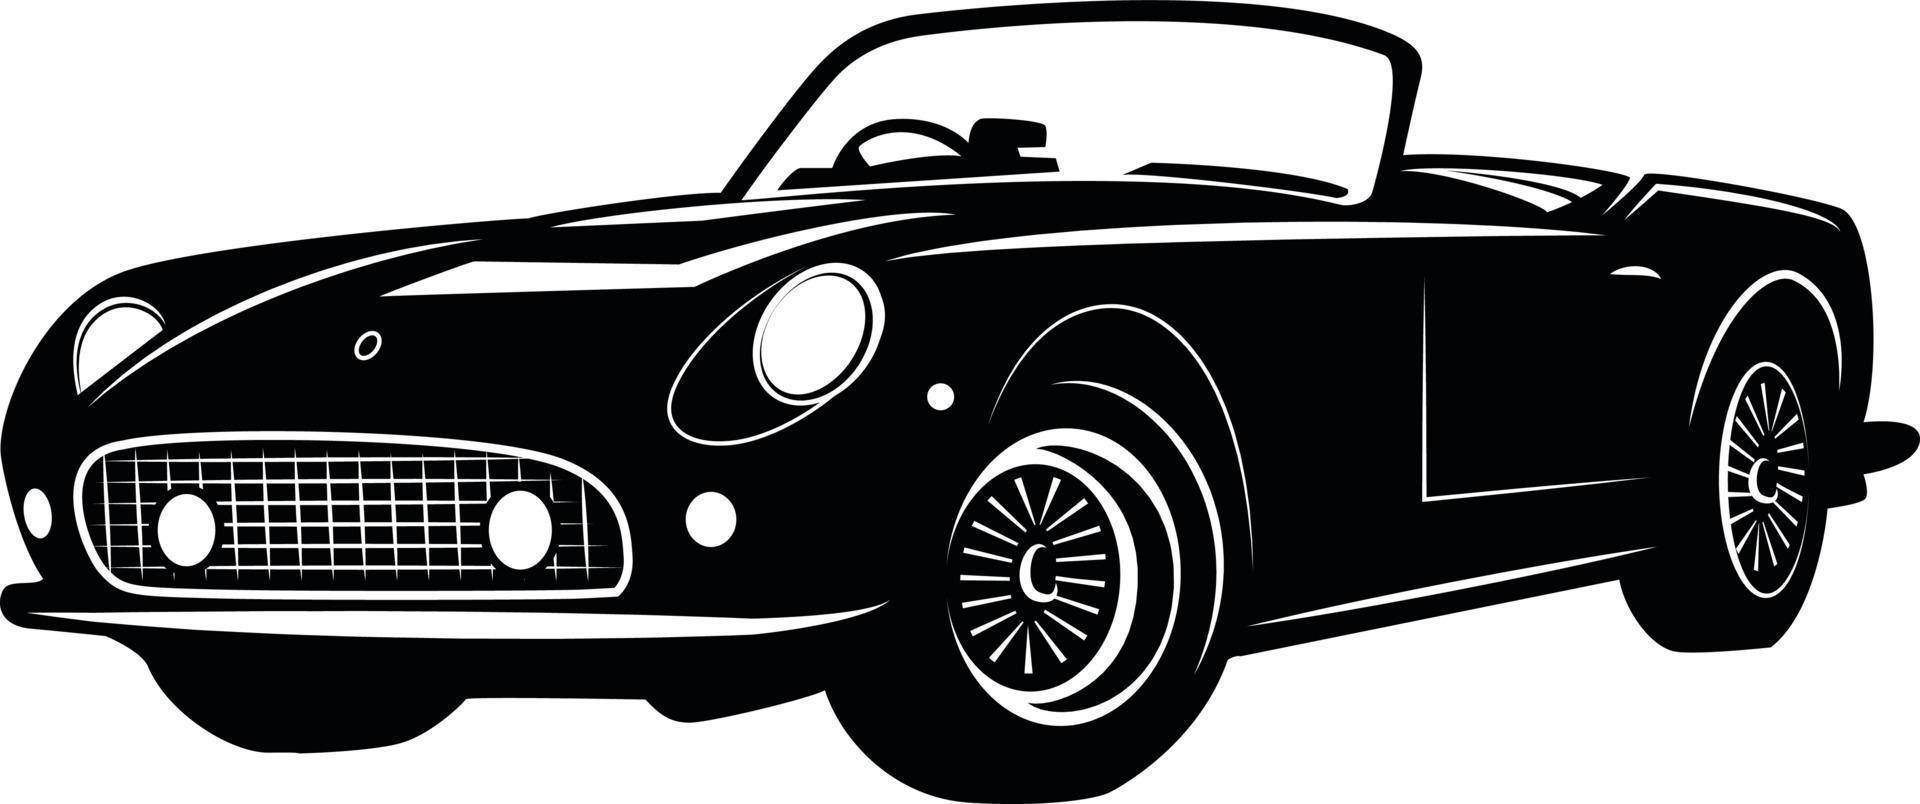 schwarz und Weiß Illustration von ein alt Automobil vektor